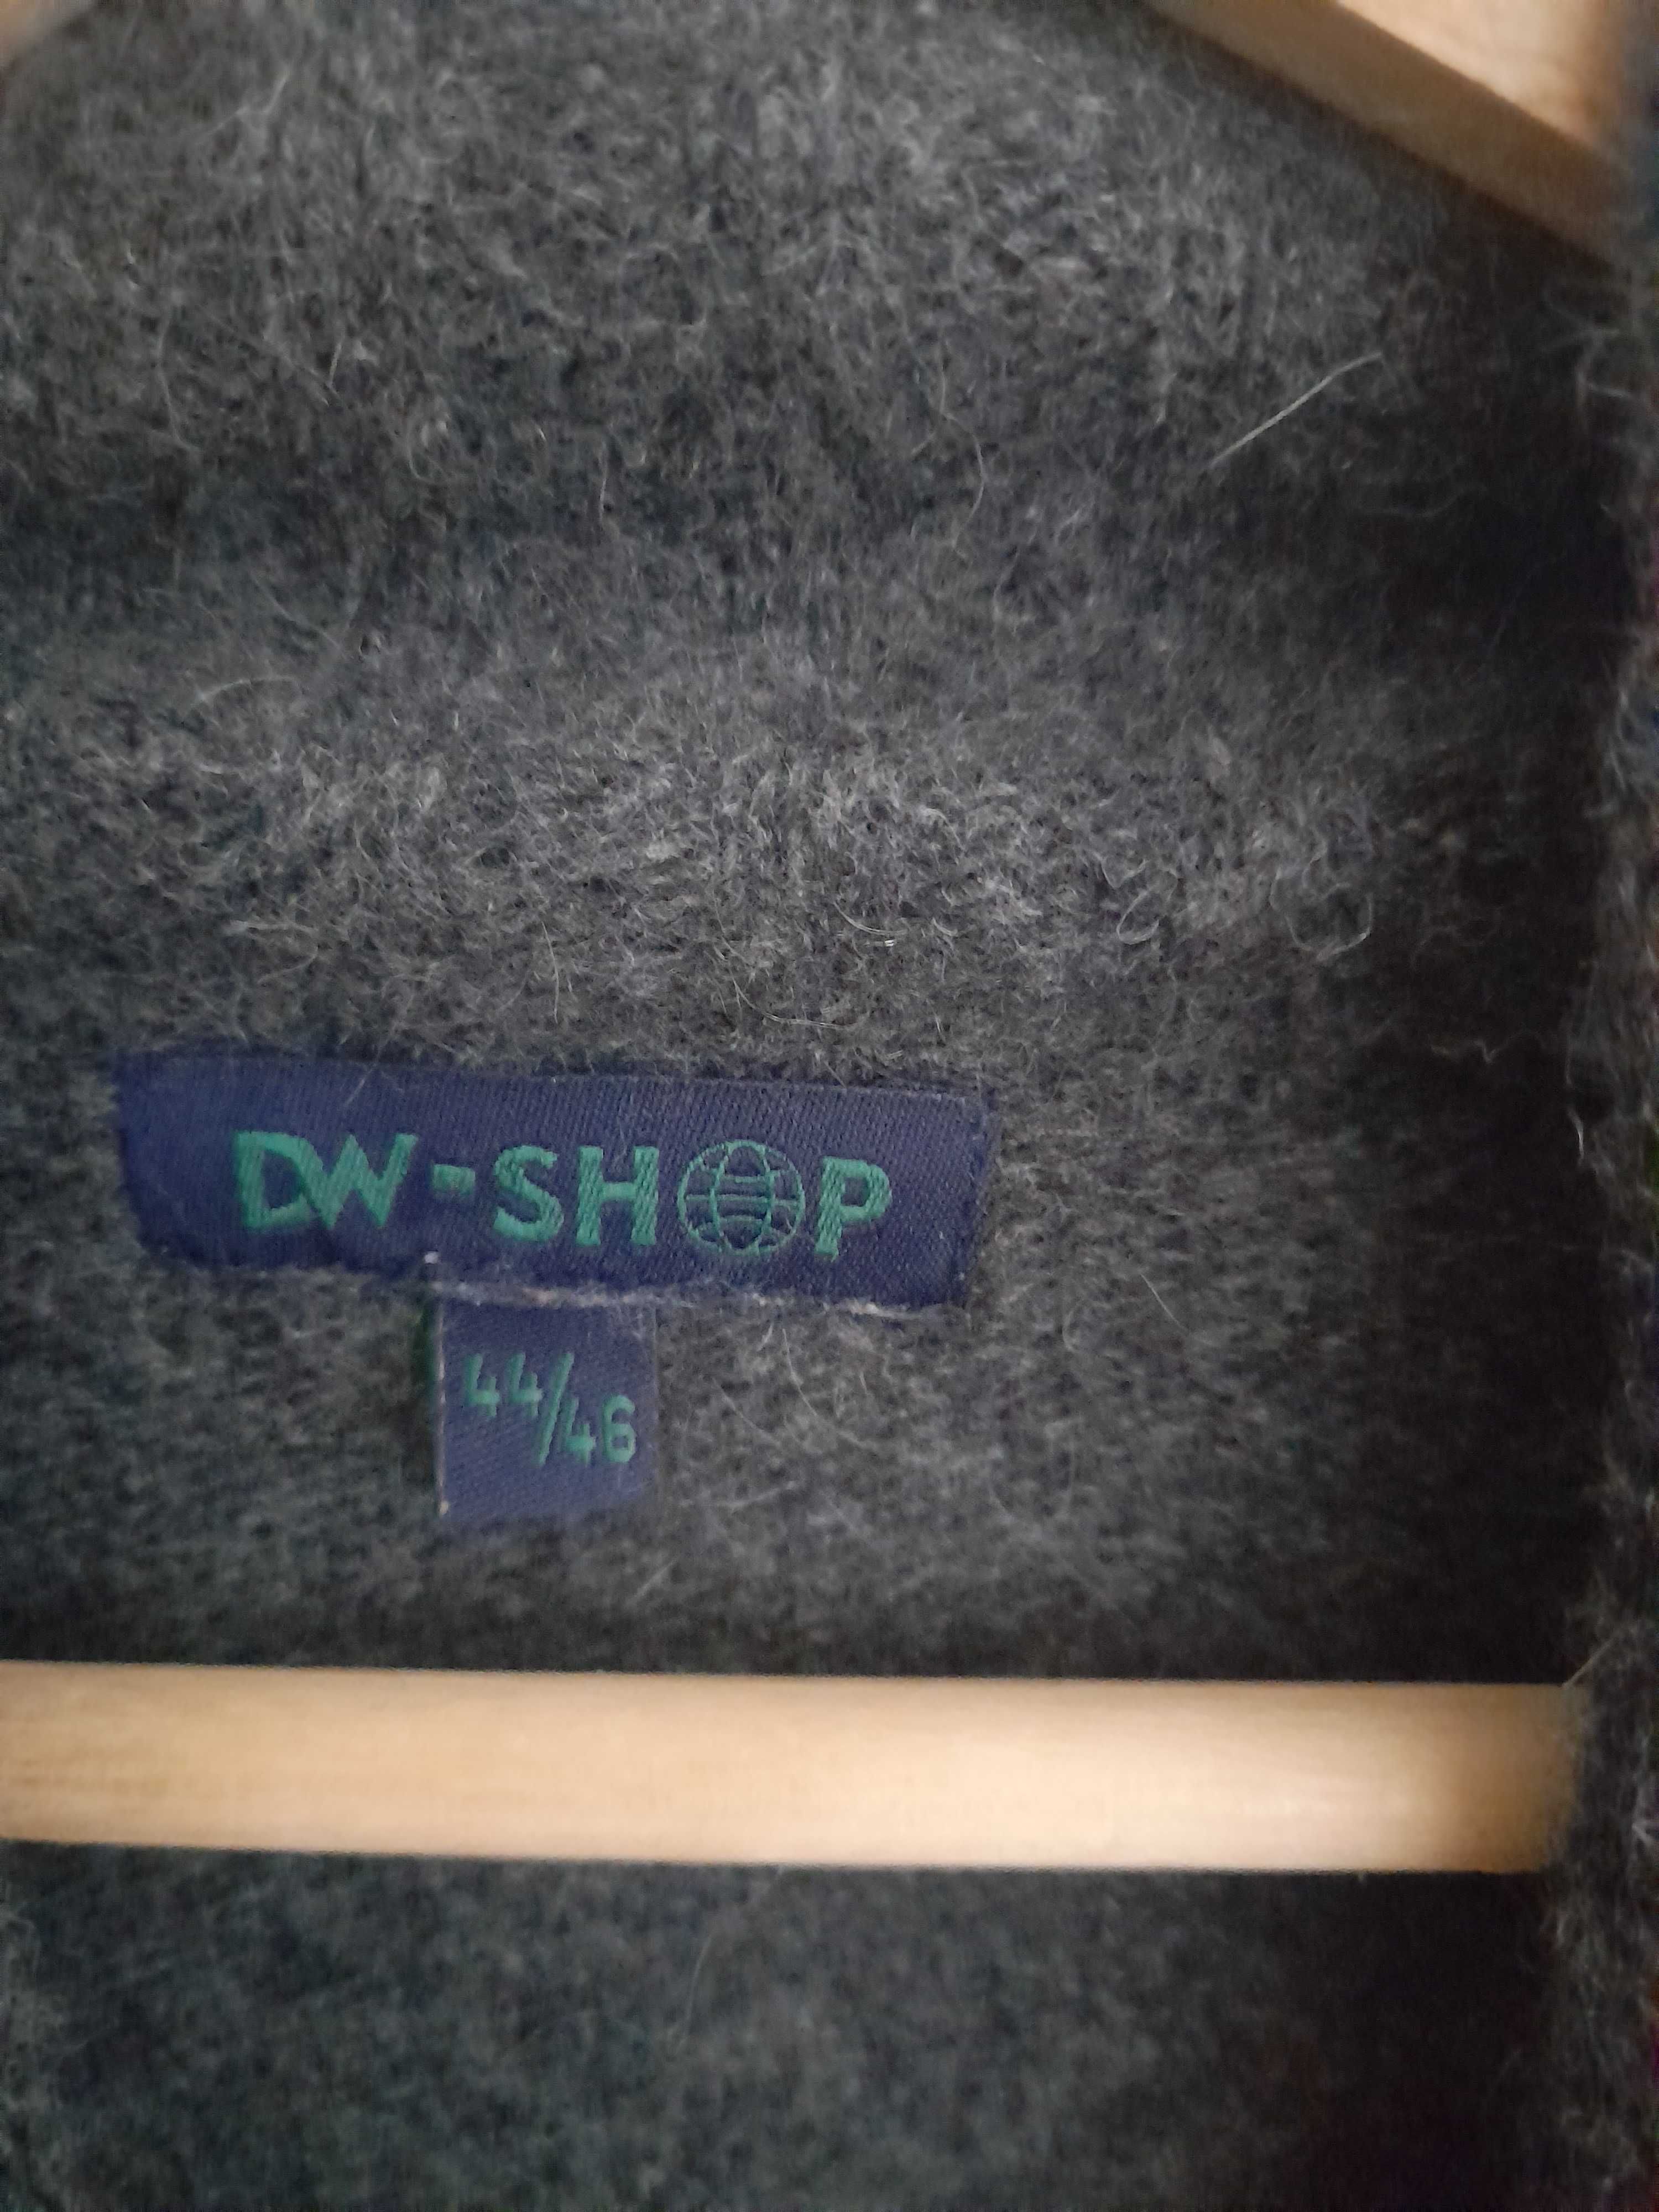 Pulover DW Shop, lana/angora, L-XL, 50 lei